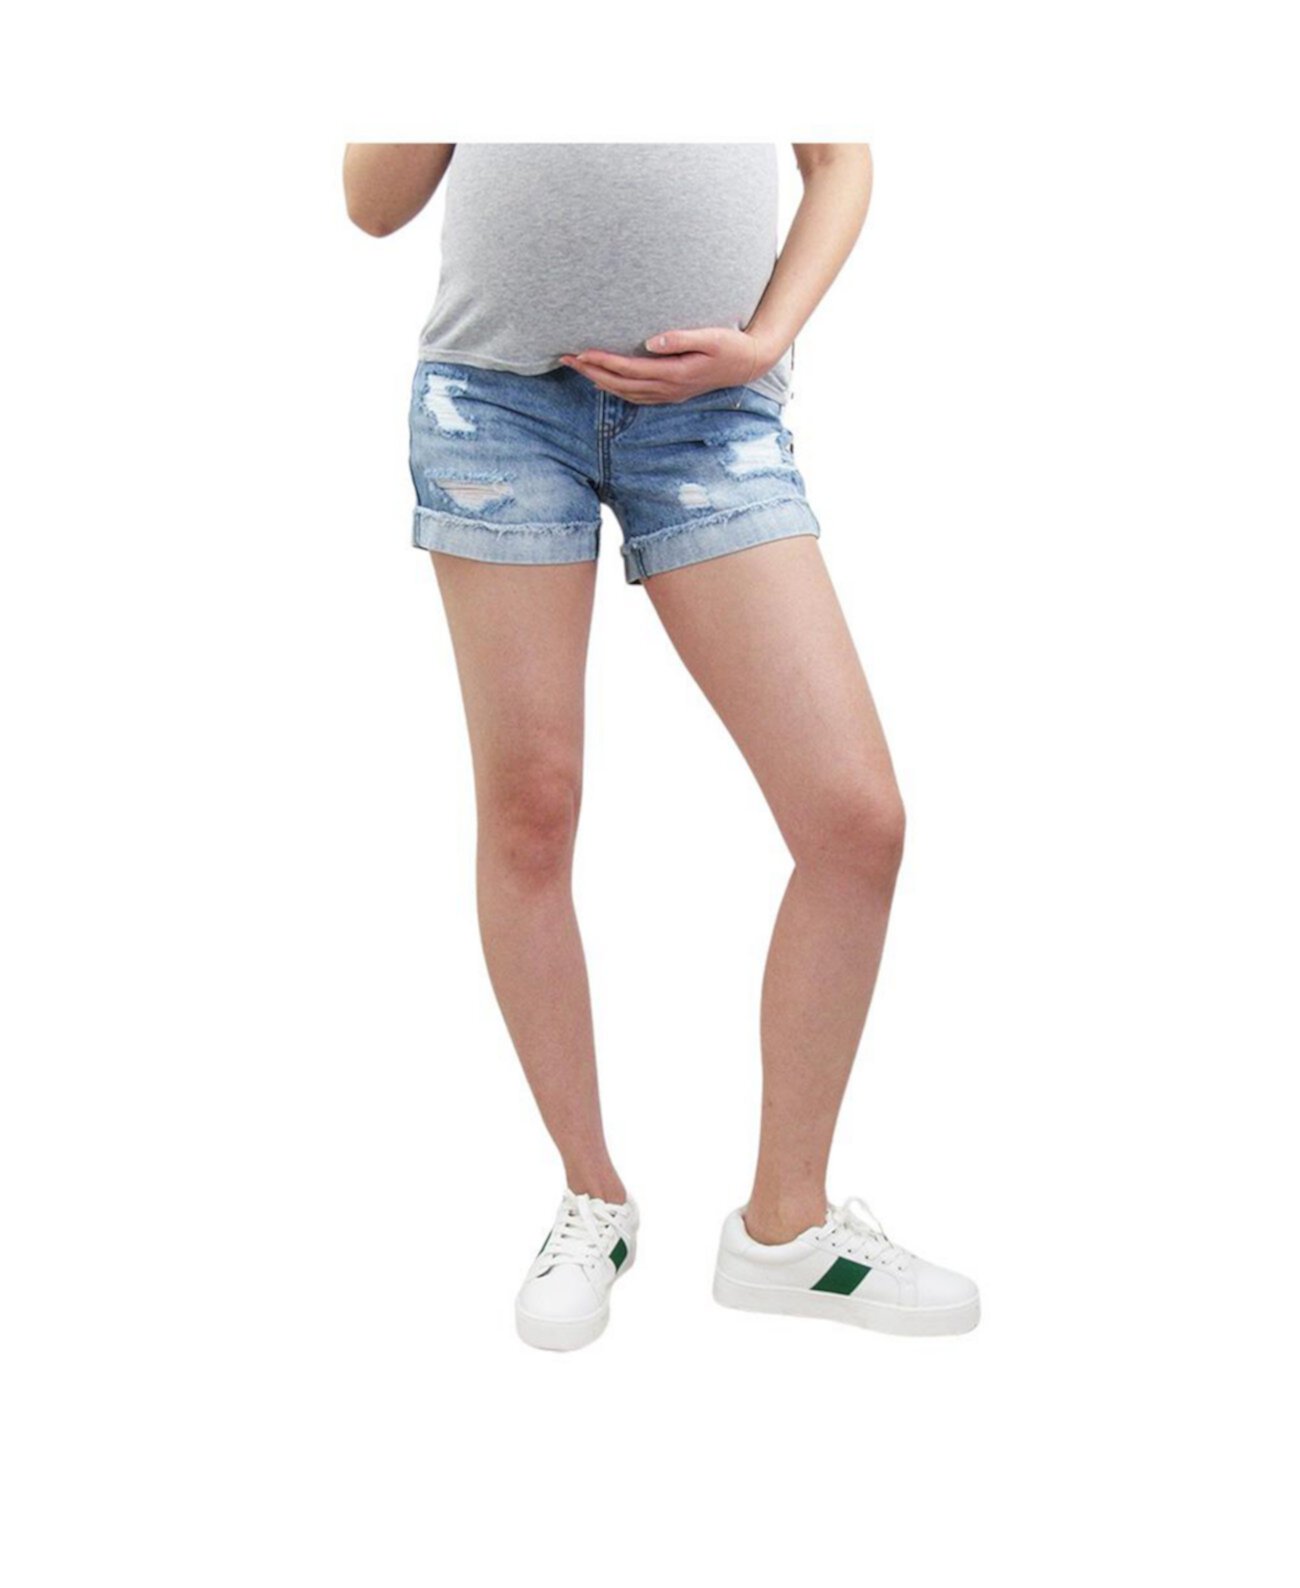 Джинсовые шорты для беременных с бахромой и бахромой в винтажном стиле с полоской на животе Indigo Poppy